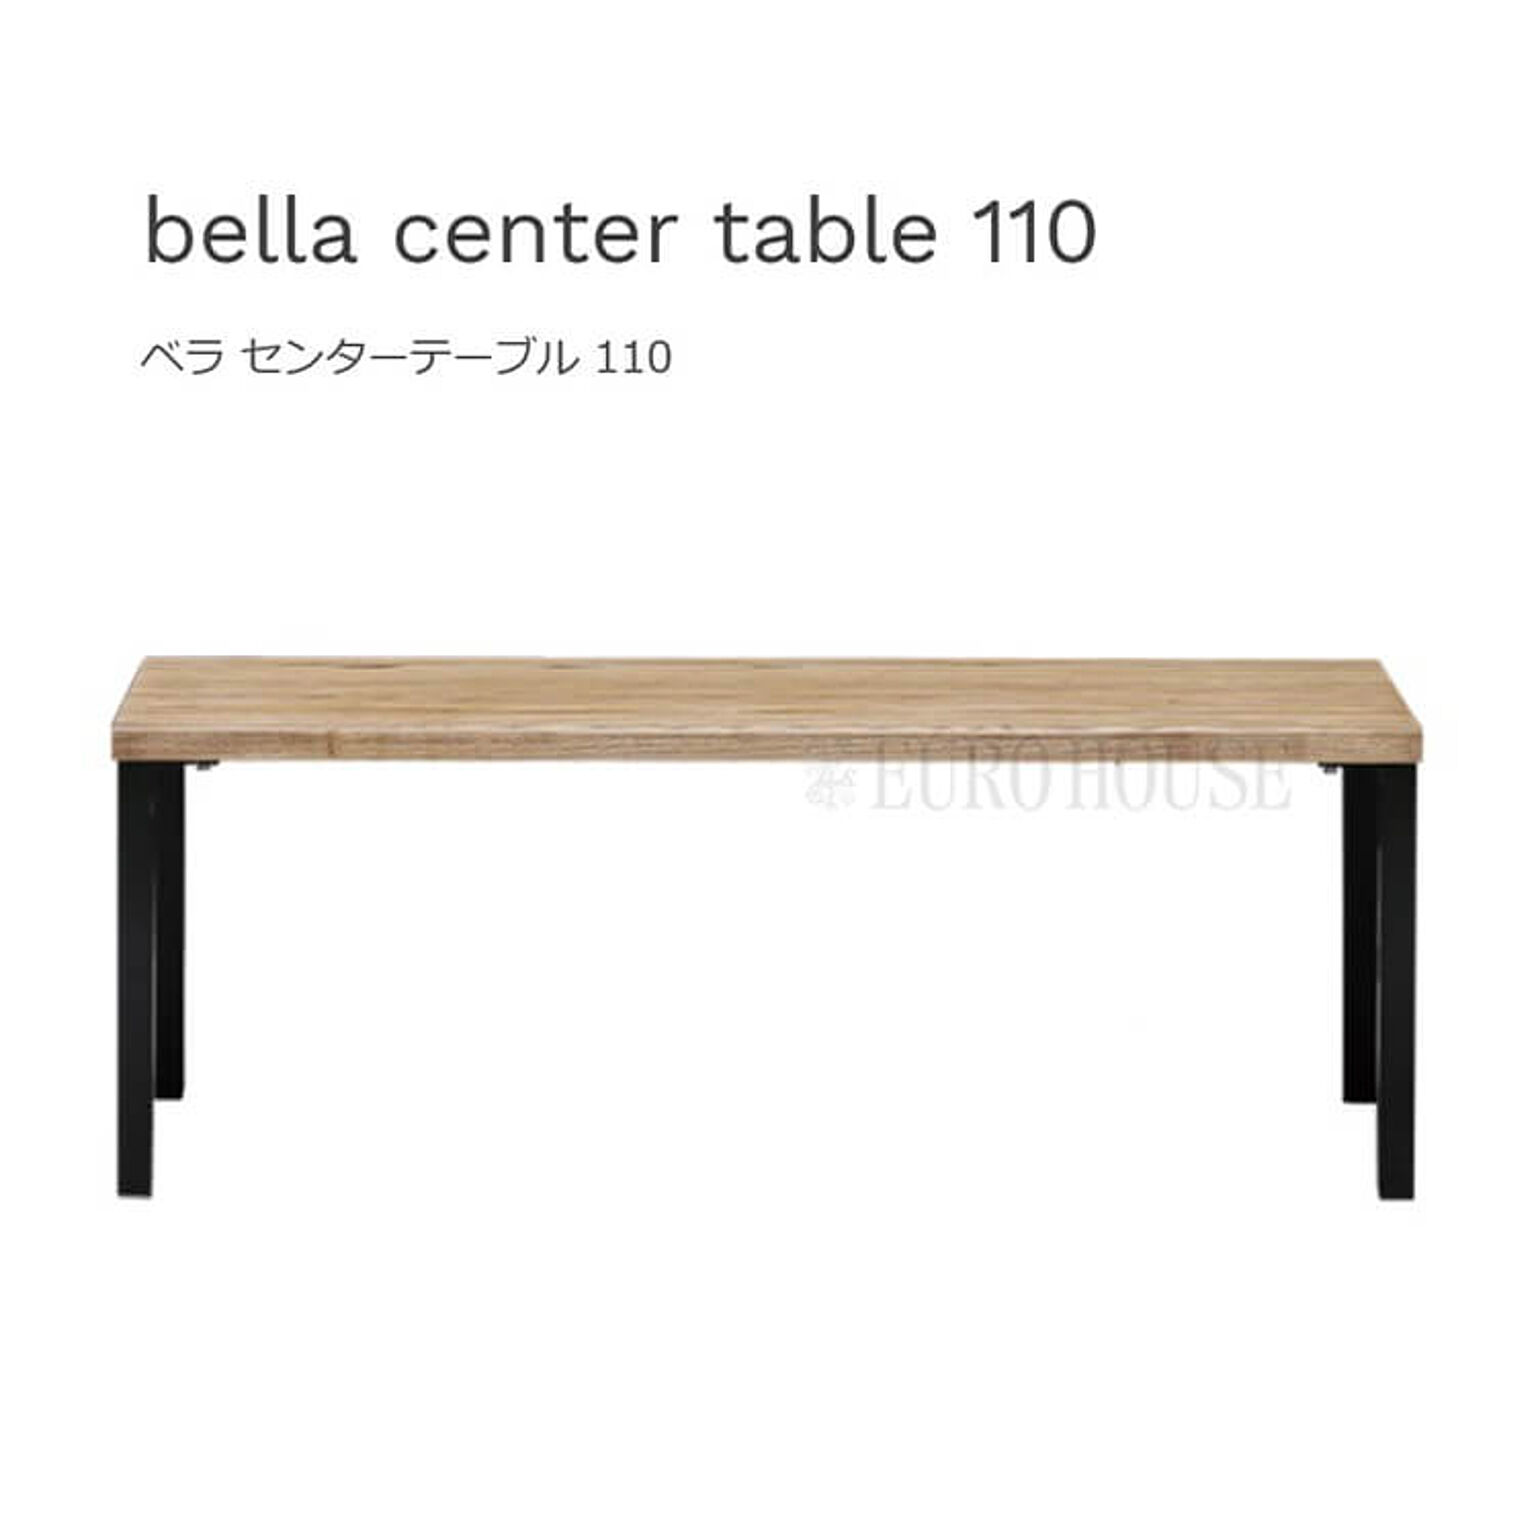 センターテーブル ベラ 幅110 アイアン脚 bella center table テーブル リビングテーブル アッシュ材 木製 ナチュラル ノラ and g. 関家具 